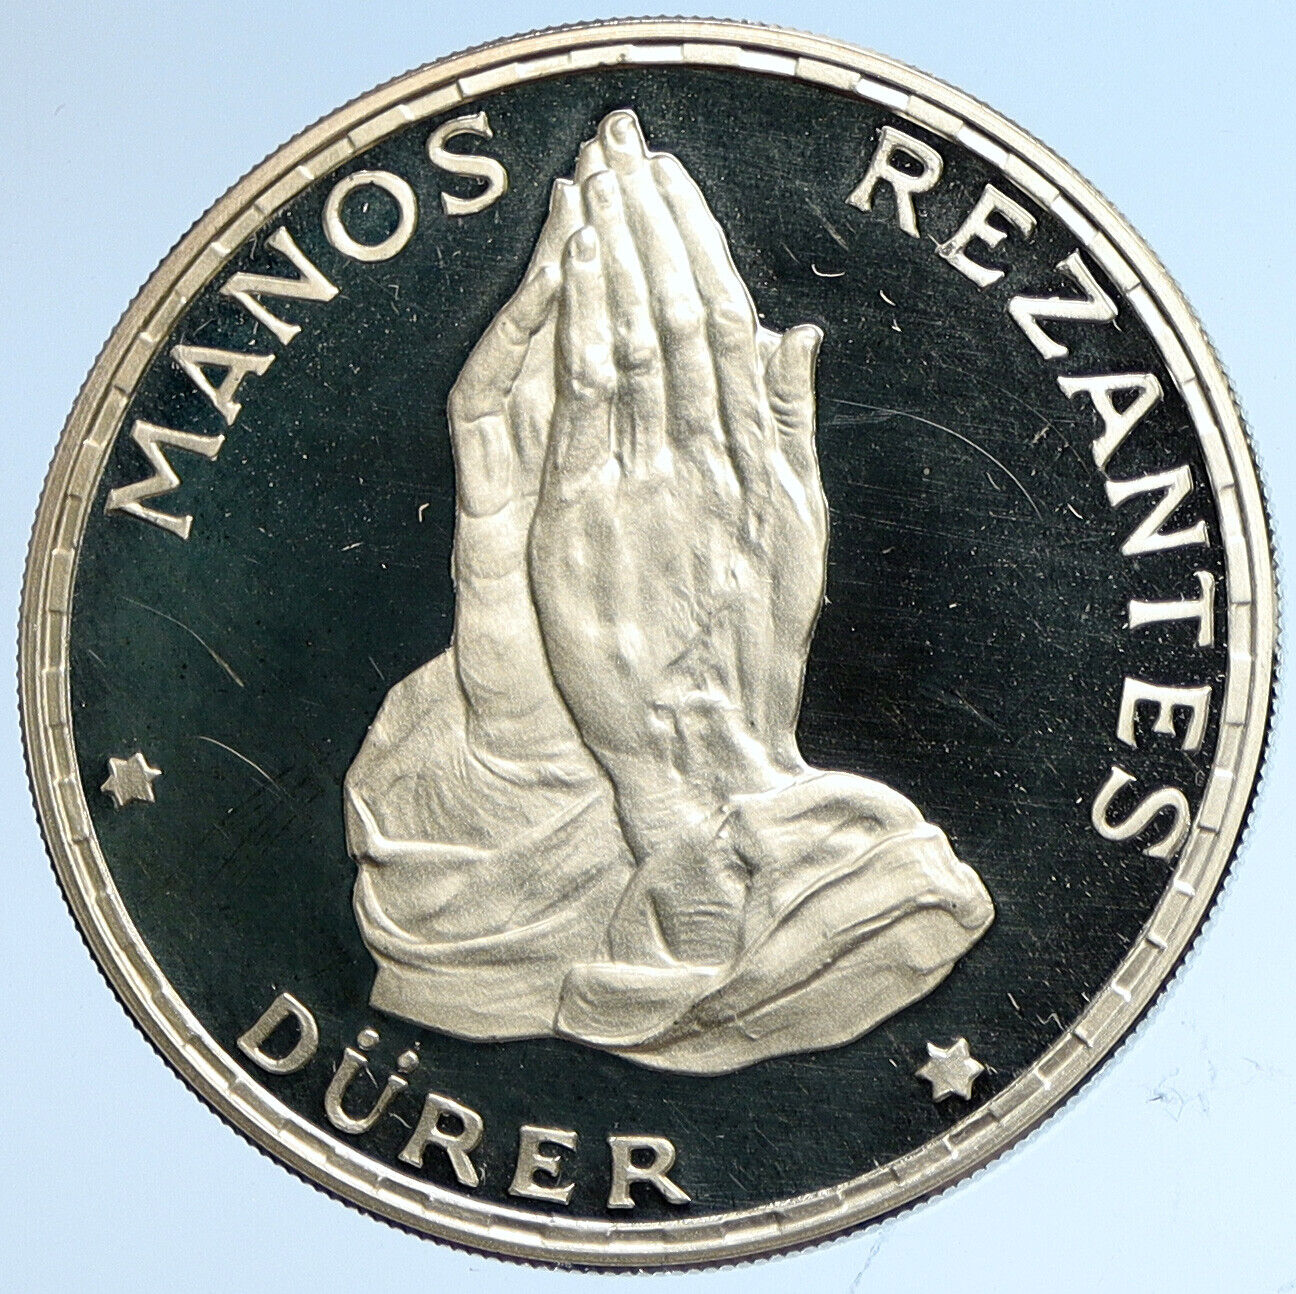 1970 EQUATORIAL GUINEA Dürer Praying Hands Proof Silver 100 Peseta Coin i113210